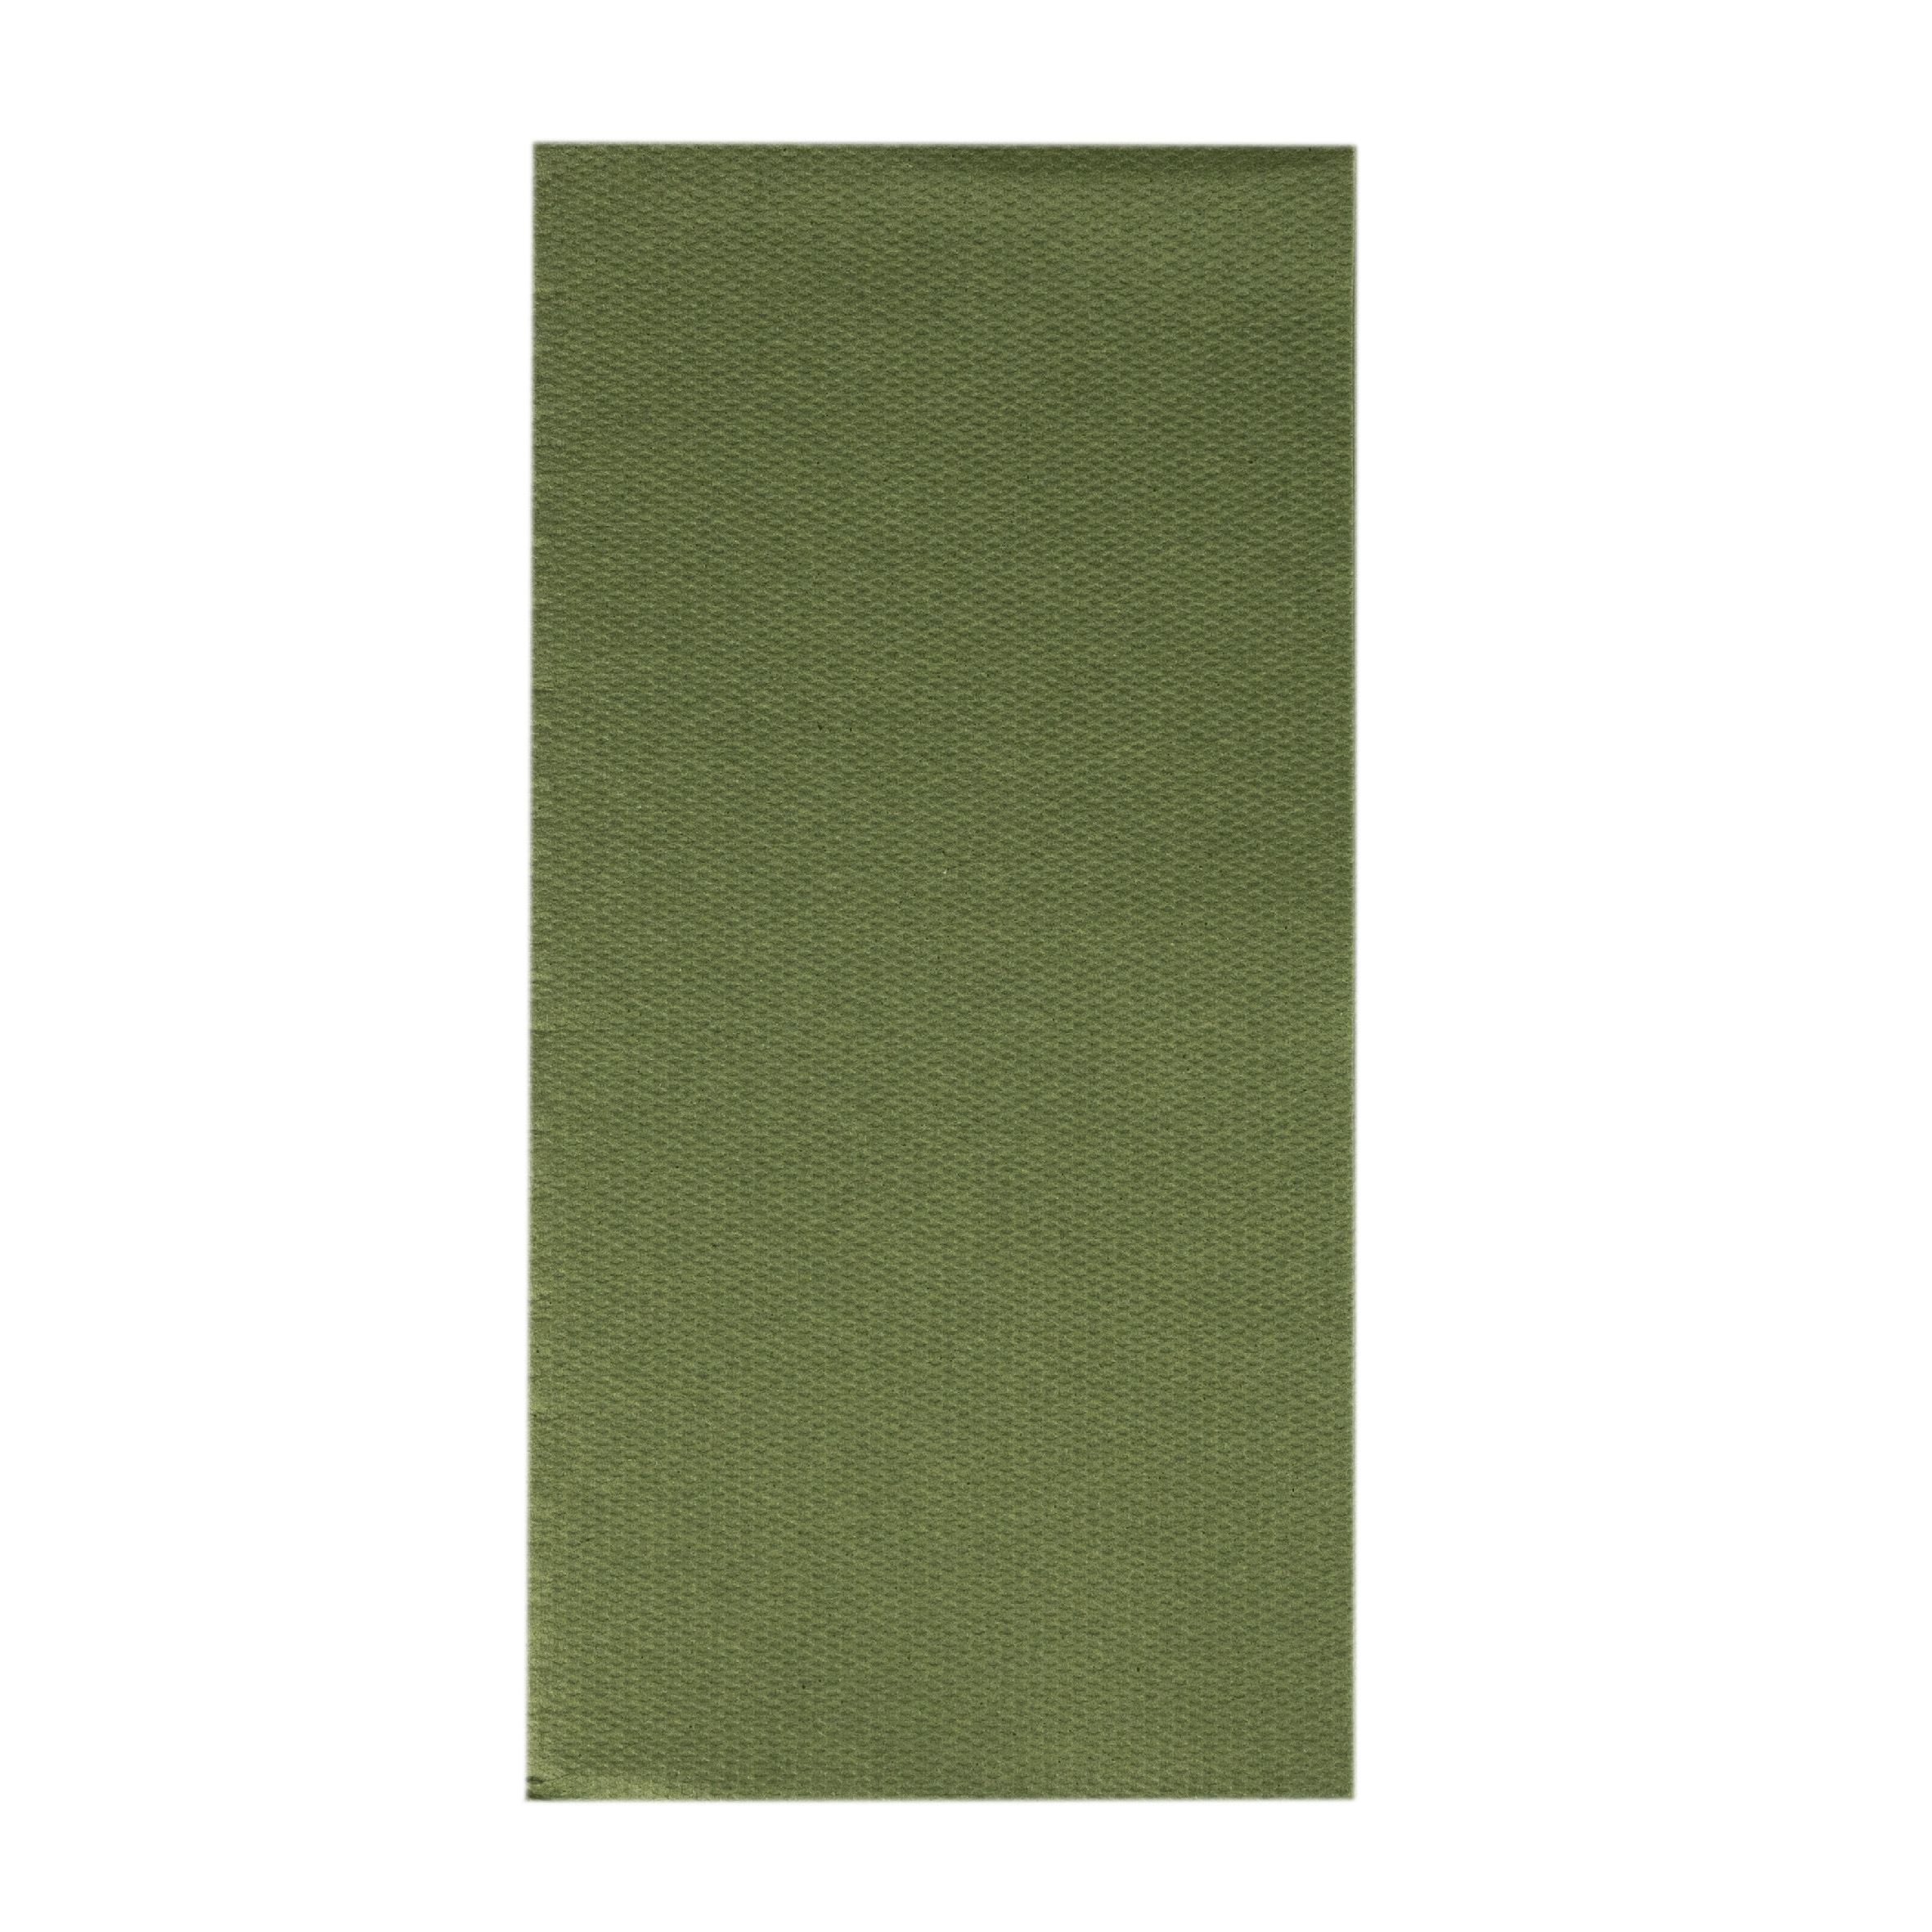 Mank Serviette Softpoint 1/4 Falz, 40 x 40 cm, Basic beige grey